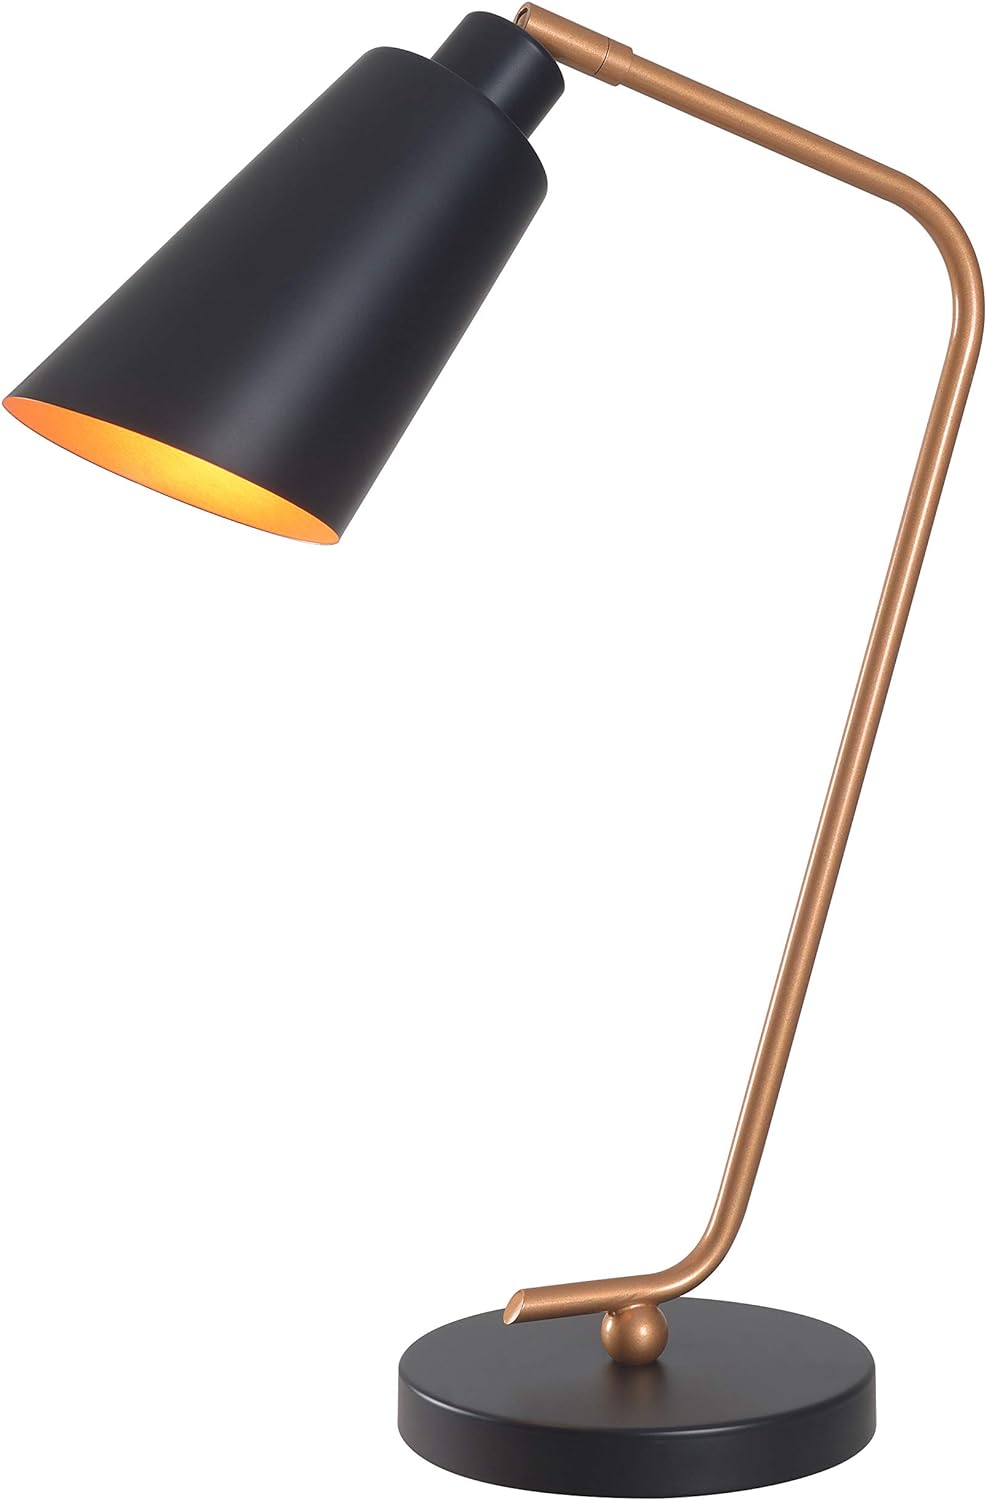 Kenroy Home Alvar 32940BL Modern Desk Lamp - Black, Gold